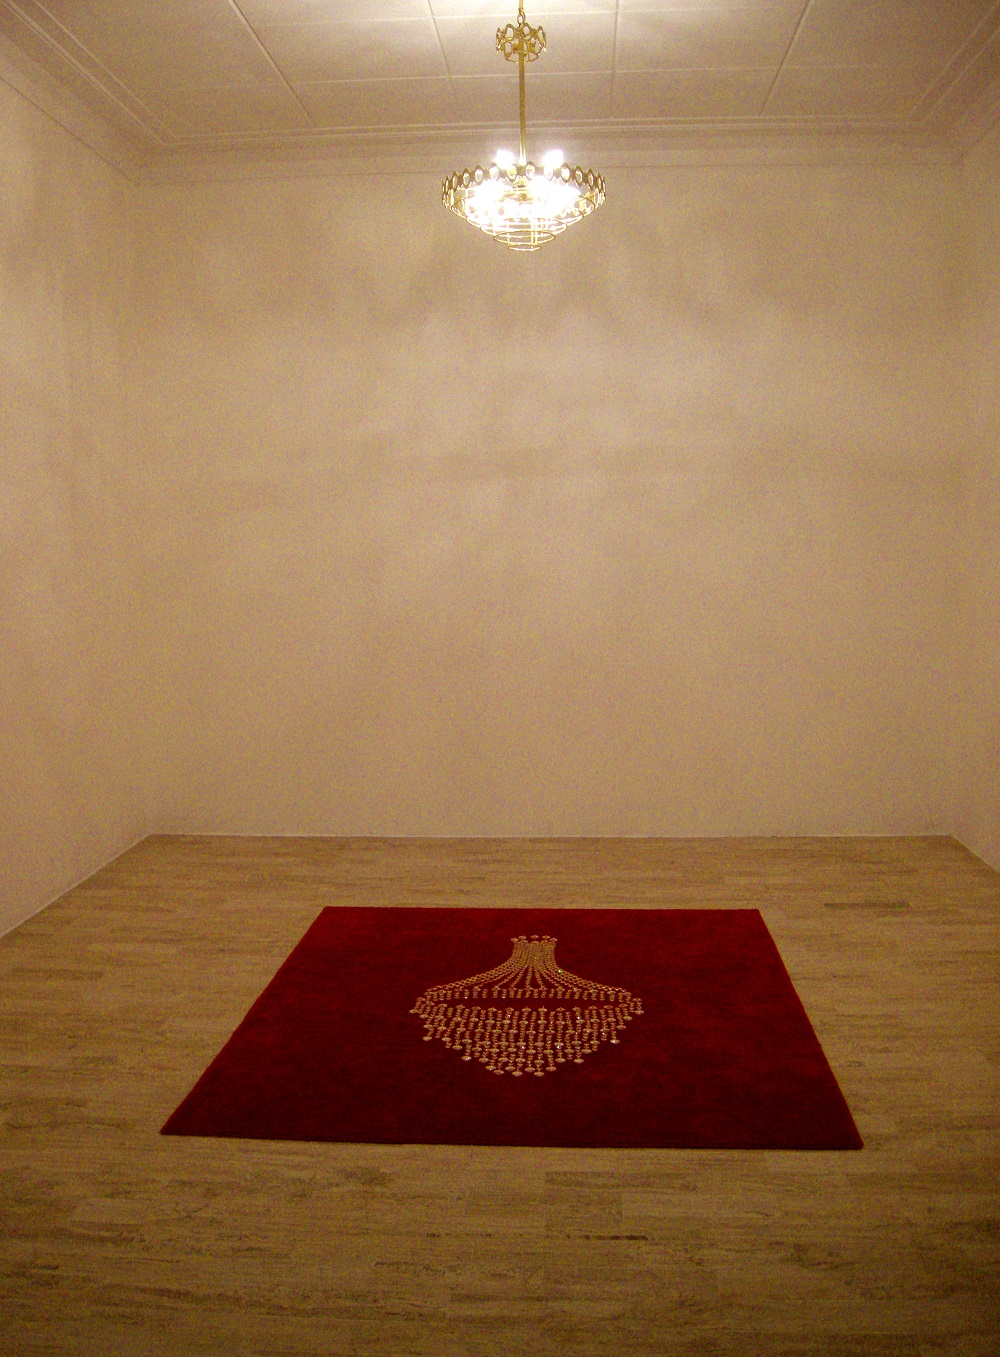  “Apariencia desnuda”, 2008. Instalación. Lámpara de gotas de cristal y alfombra roja.
